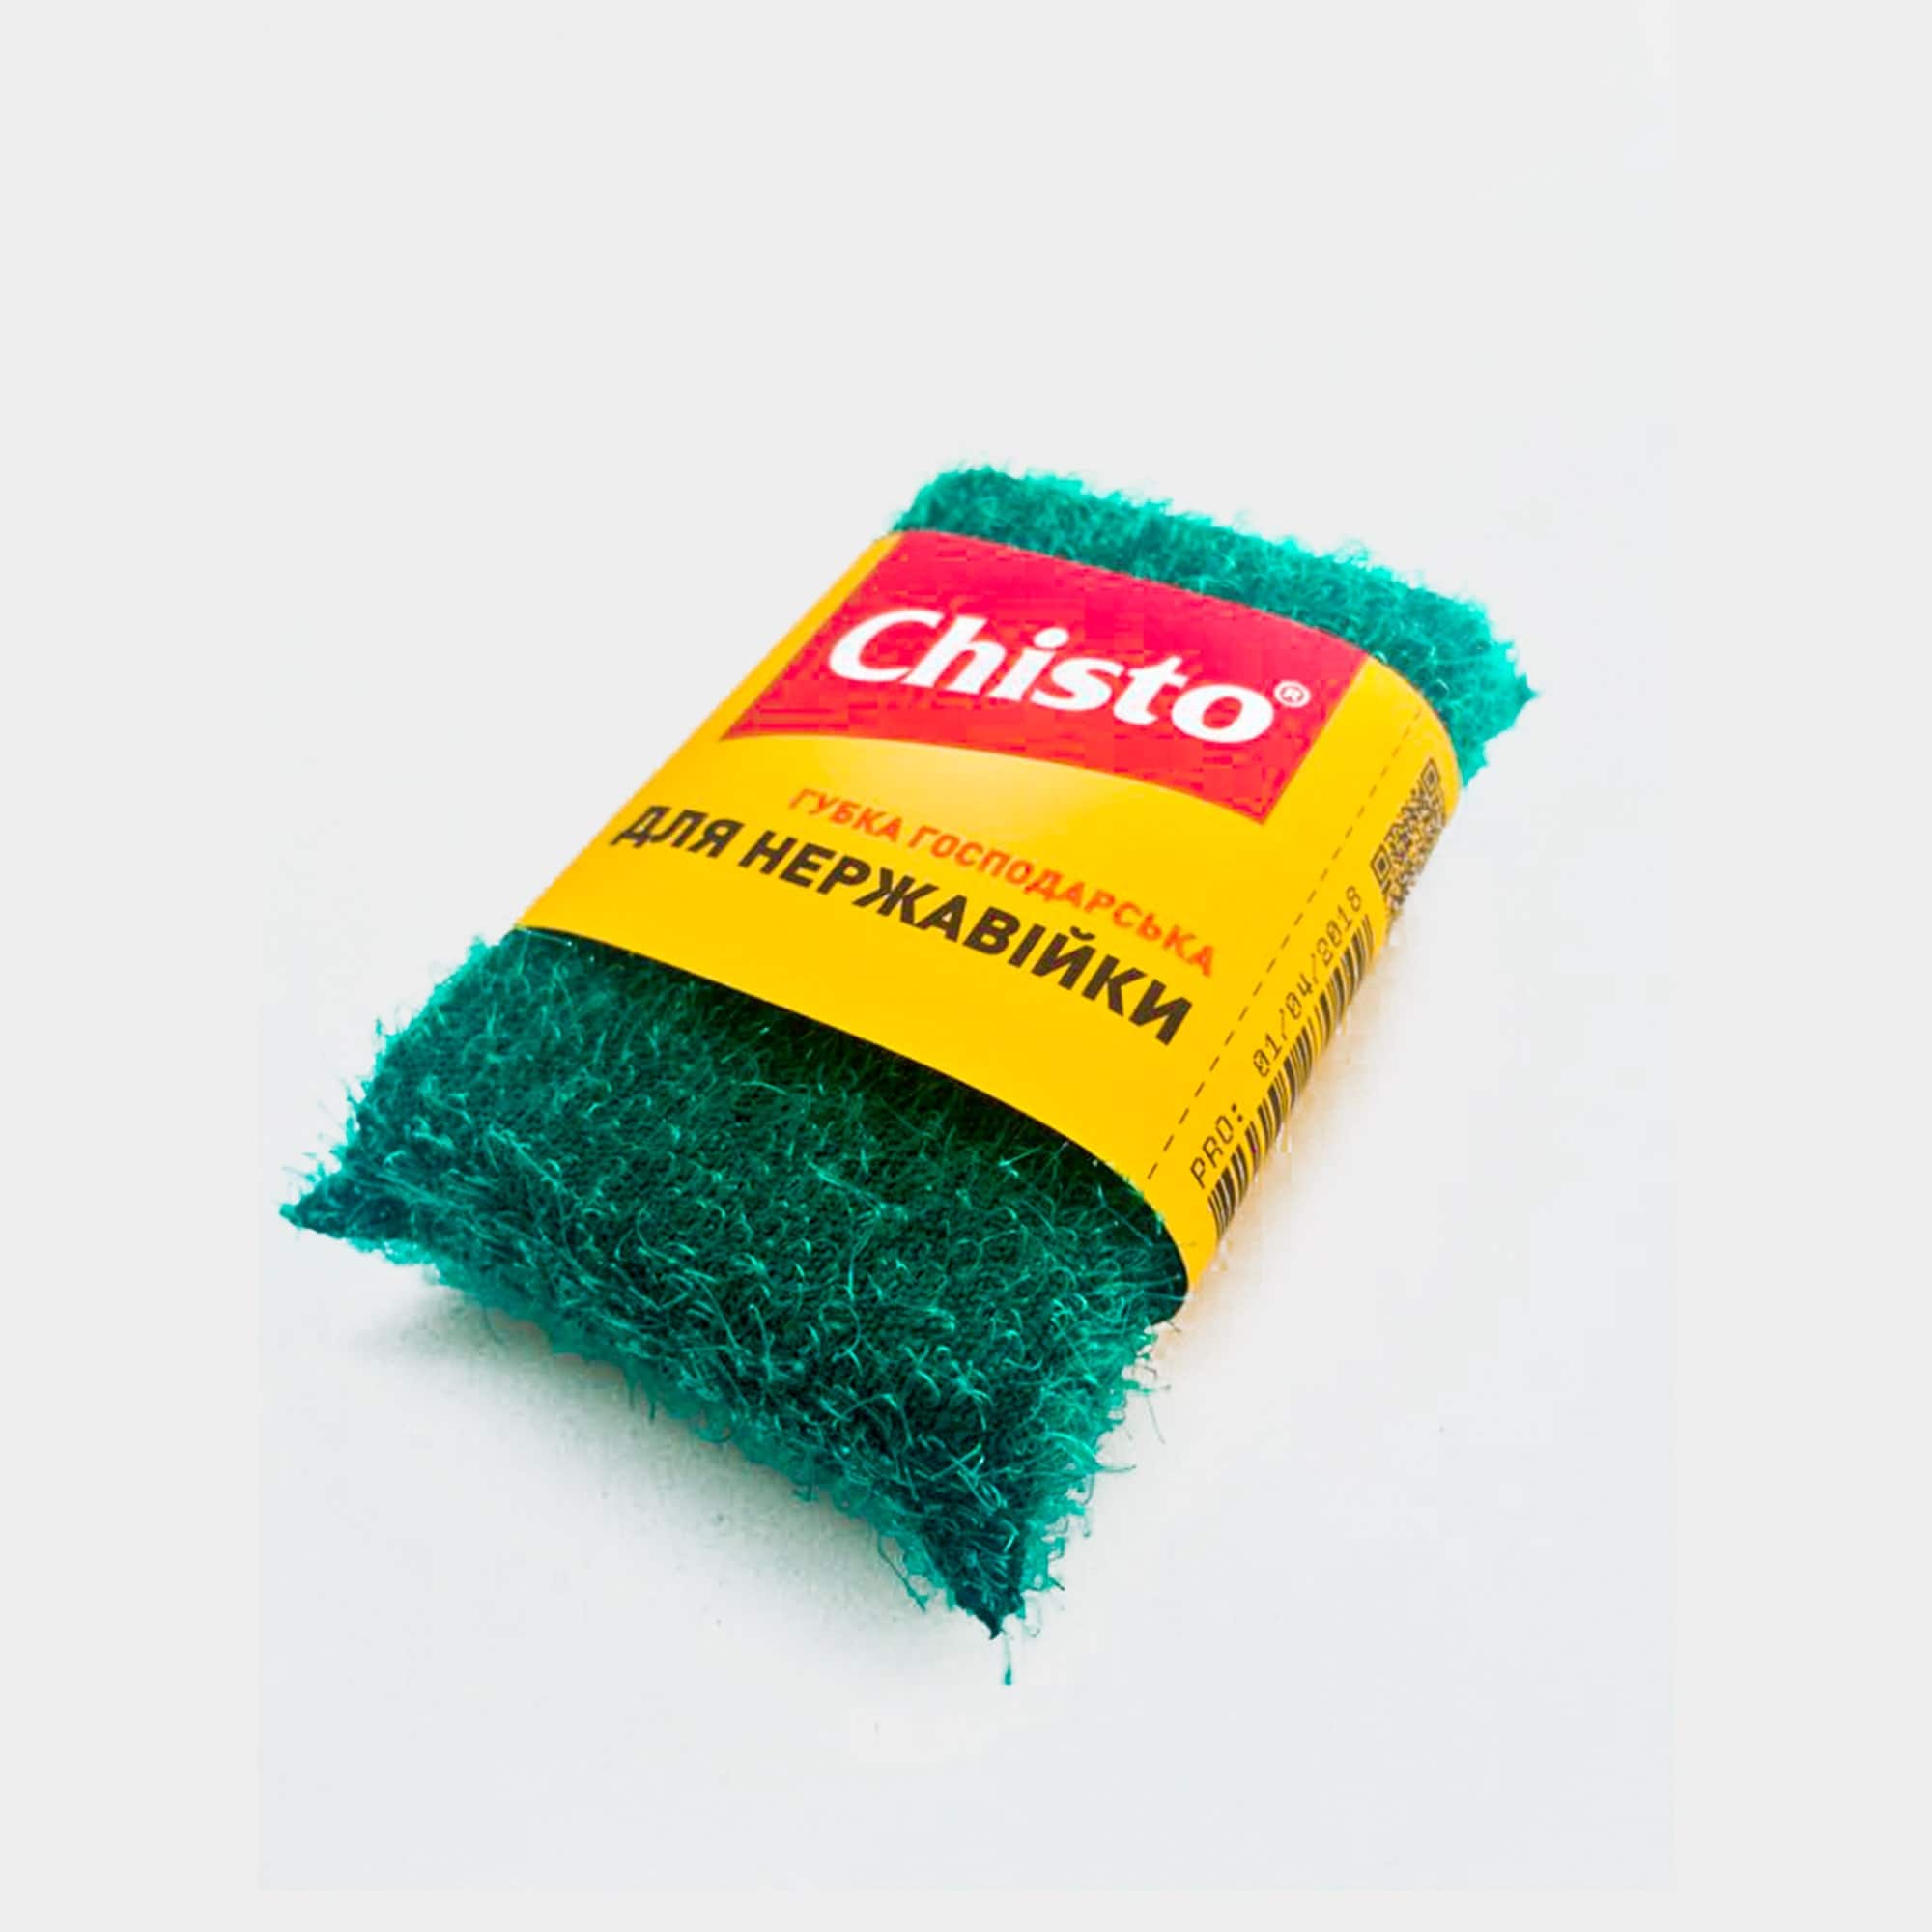 Губка хозяйственная для нержавейки ТМ «Chisto», 1 шт. | продукция ТМ Chisto